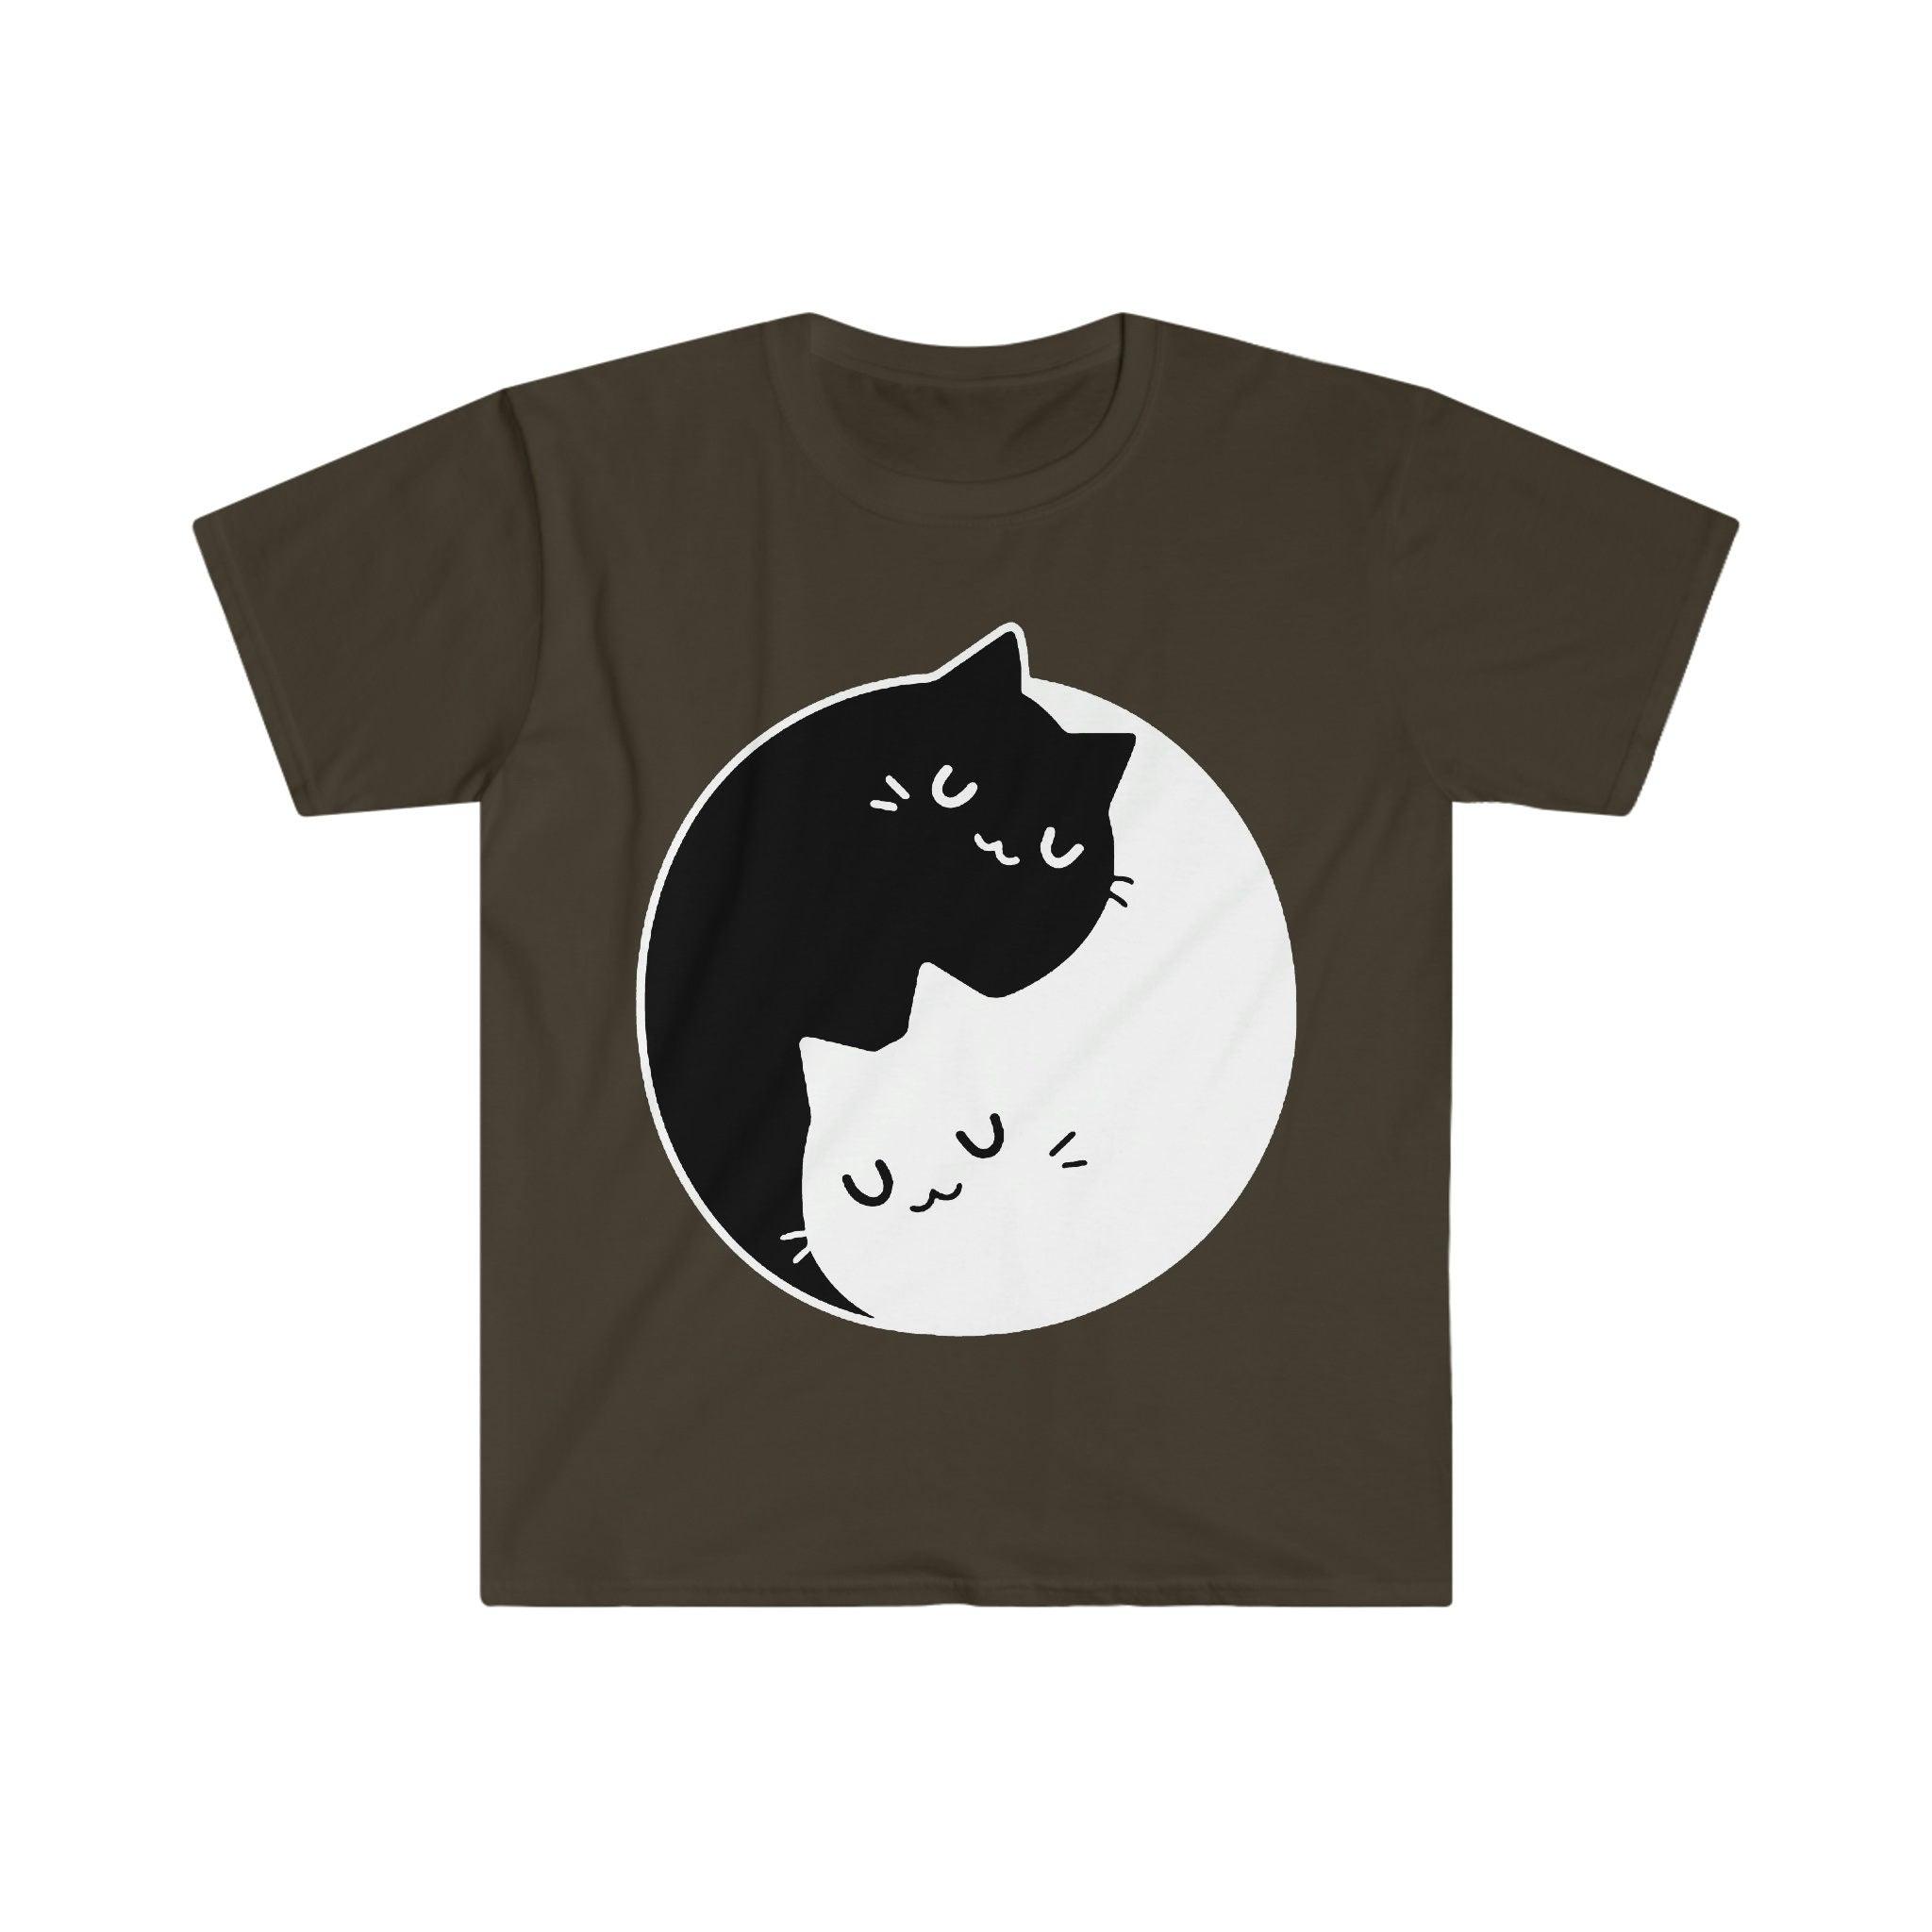 Magliette Gatti Yin Yang, Dualità Yin Yang || Gatti Yin Yang || Regalo perfetto - S M L Xl - Donna, Uomo unisex || Idee regalo per coppie Bff, mamma gatto - plusminusco.com